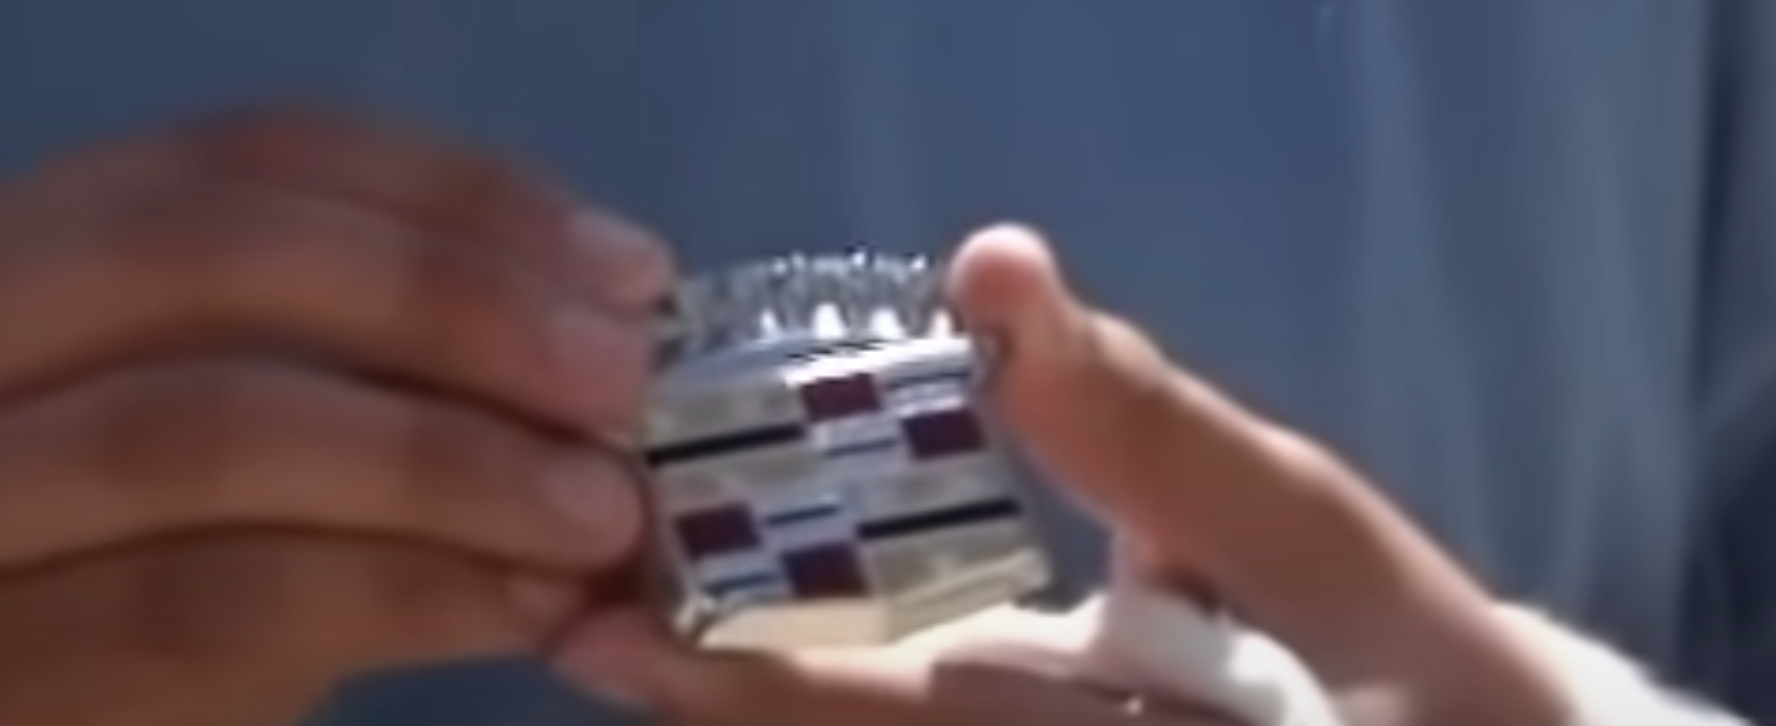 Ben-Gvir shows off emblem stolen from Rabin's car